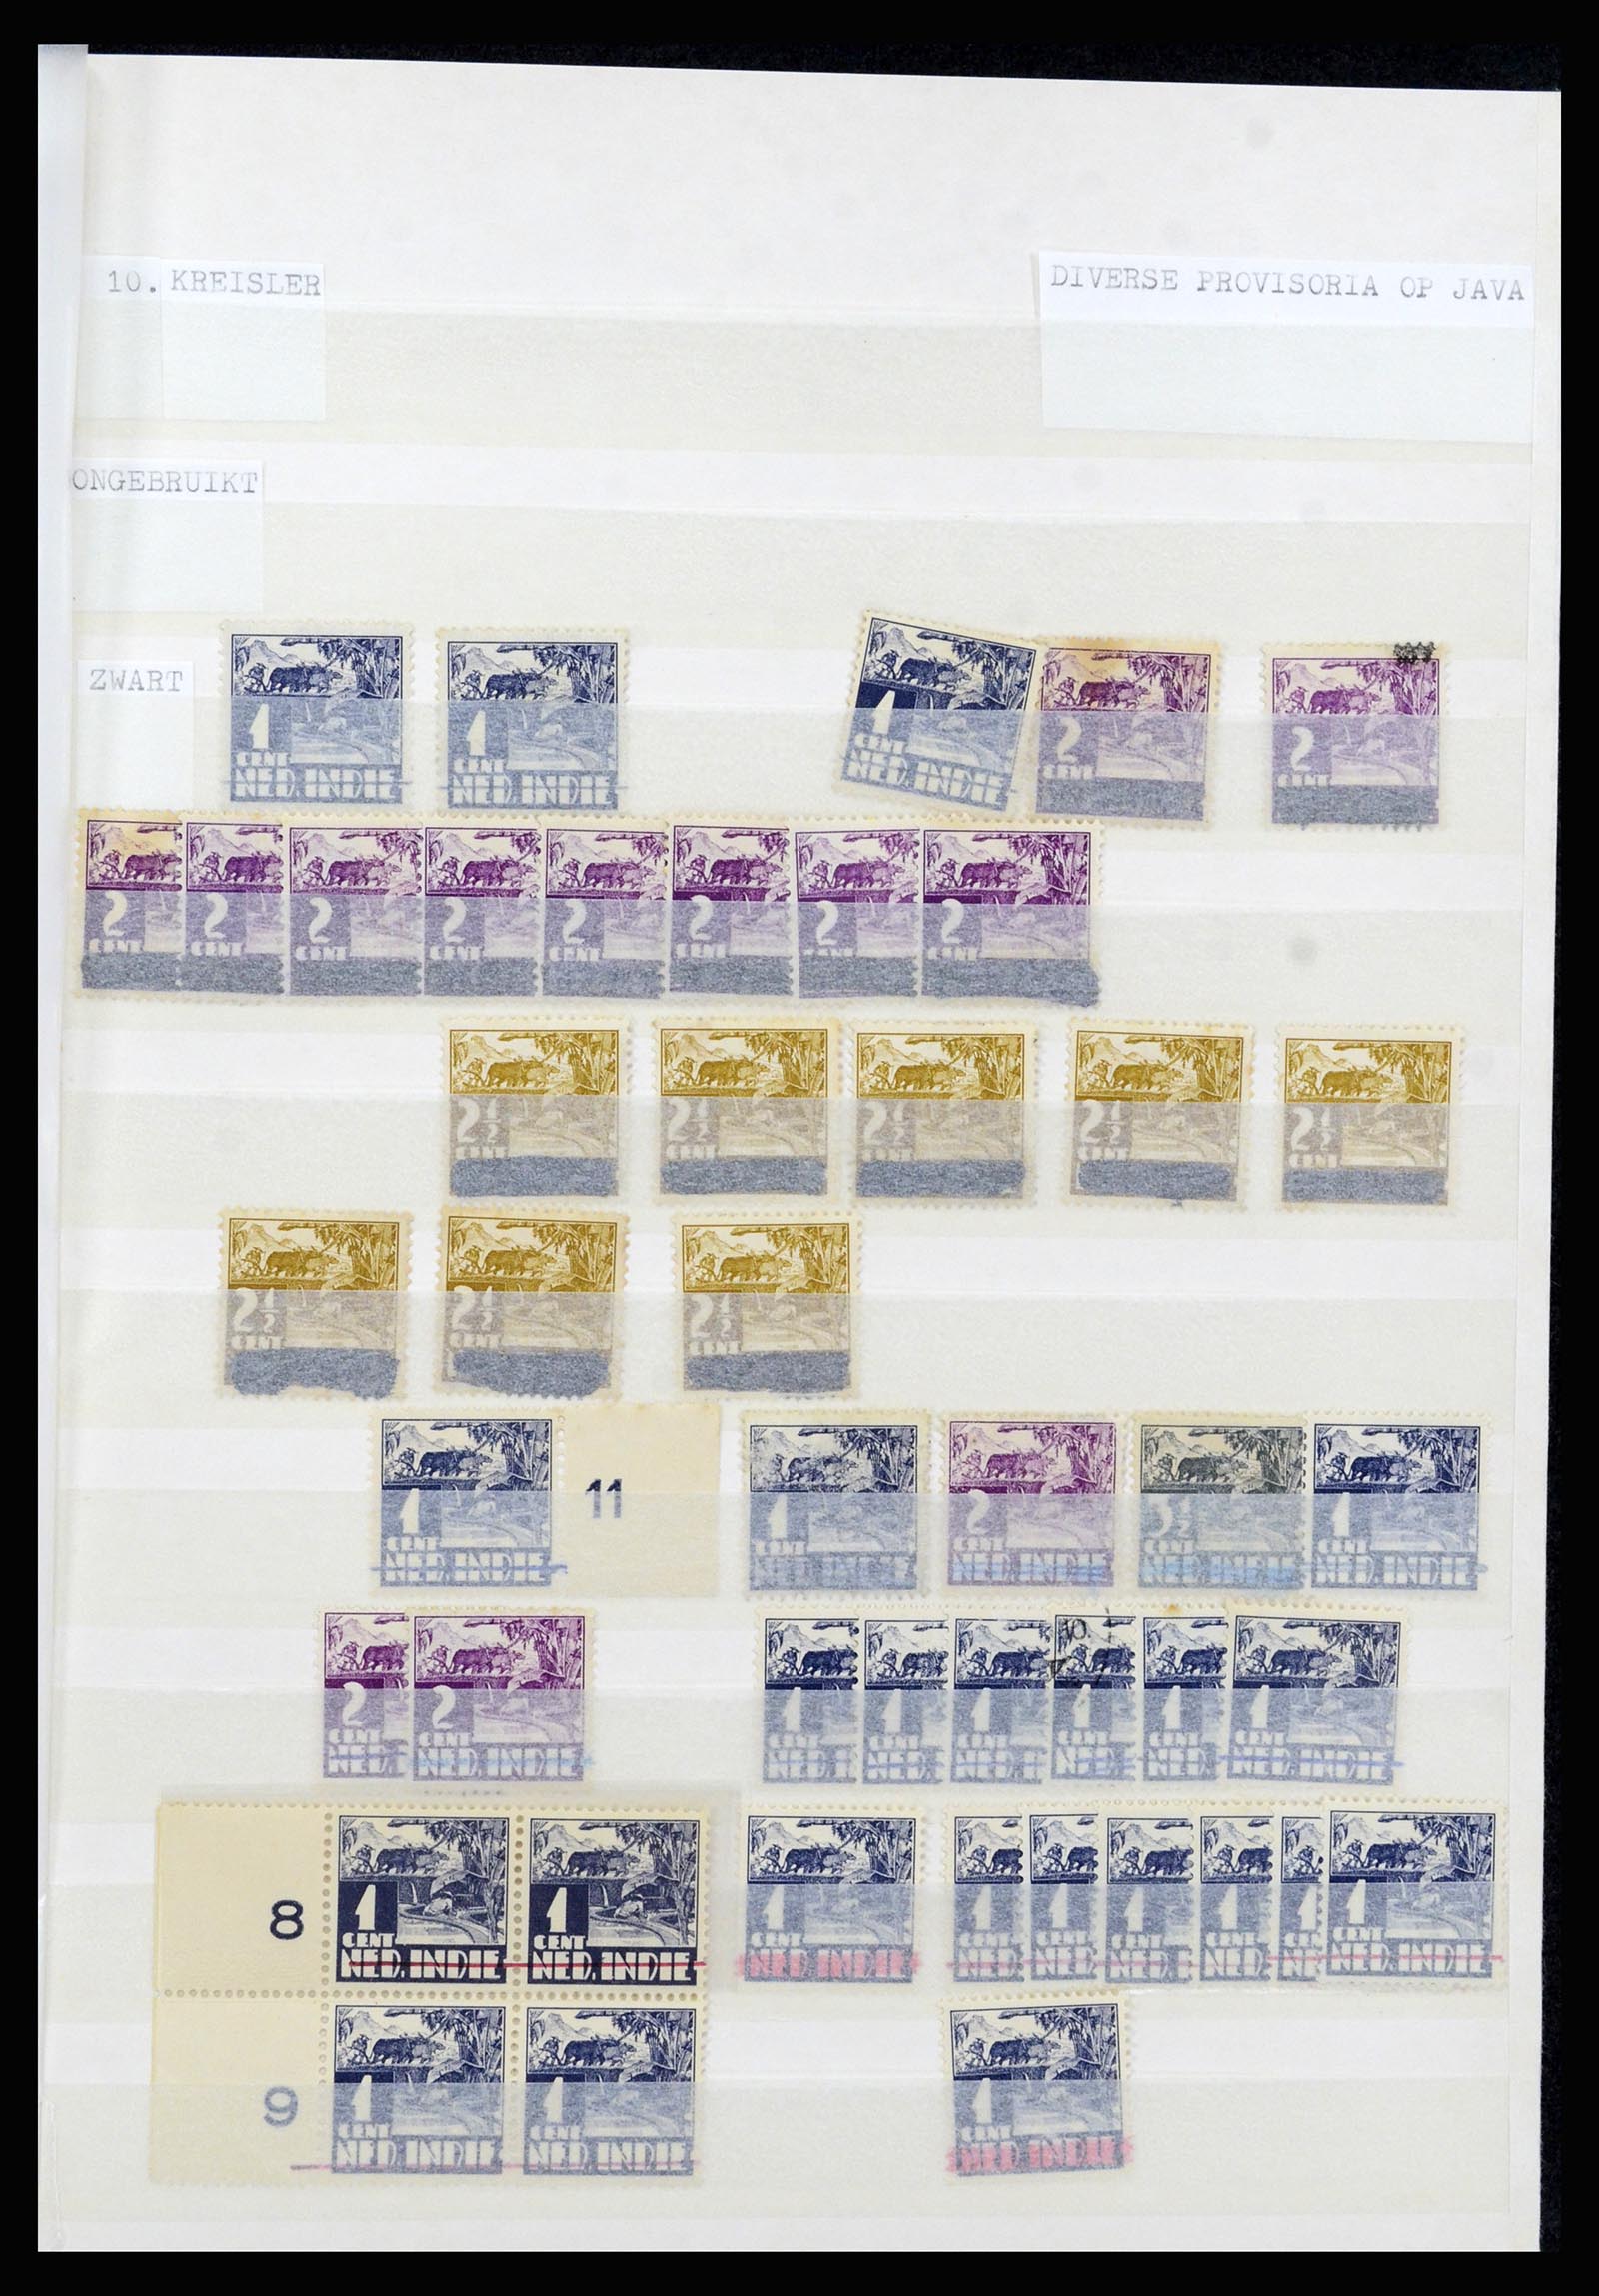 36742 005 - Stamp collection 36742 Dutch Indies interim period 1945-1949.